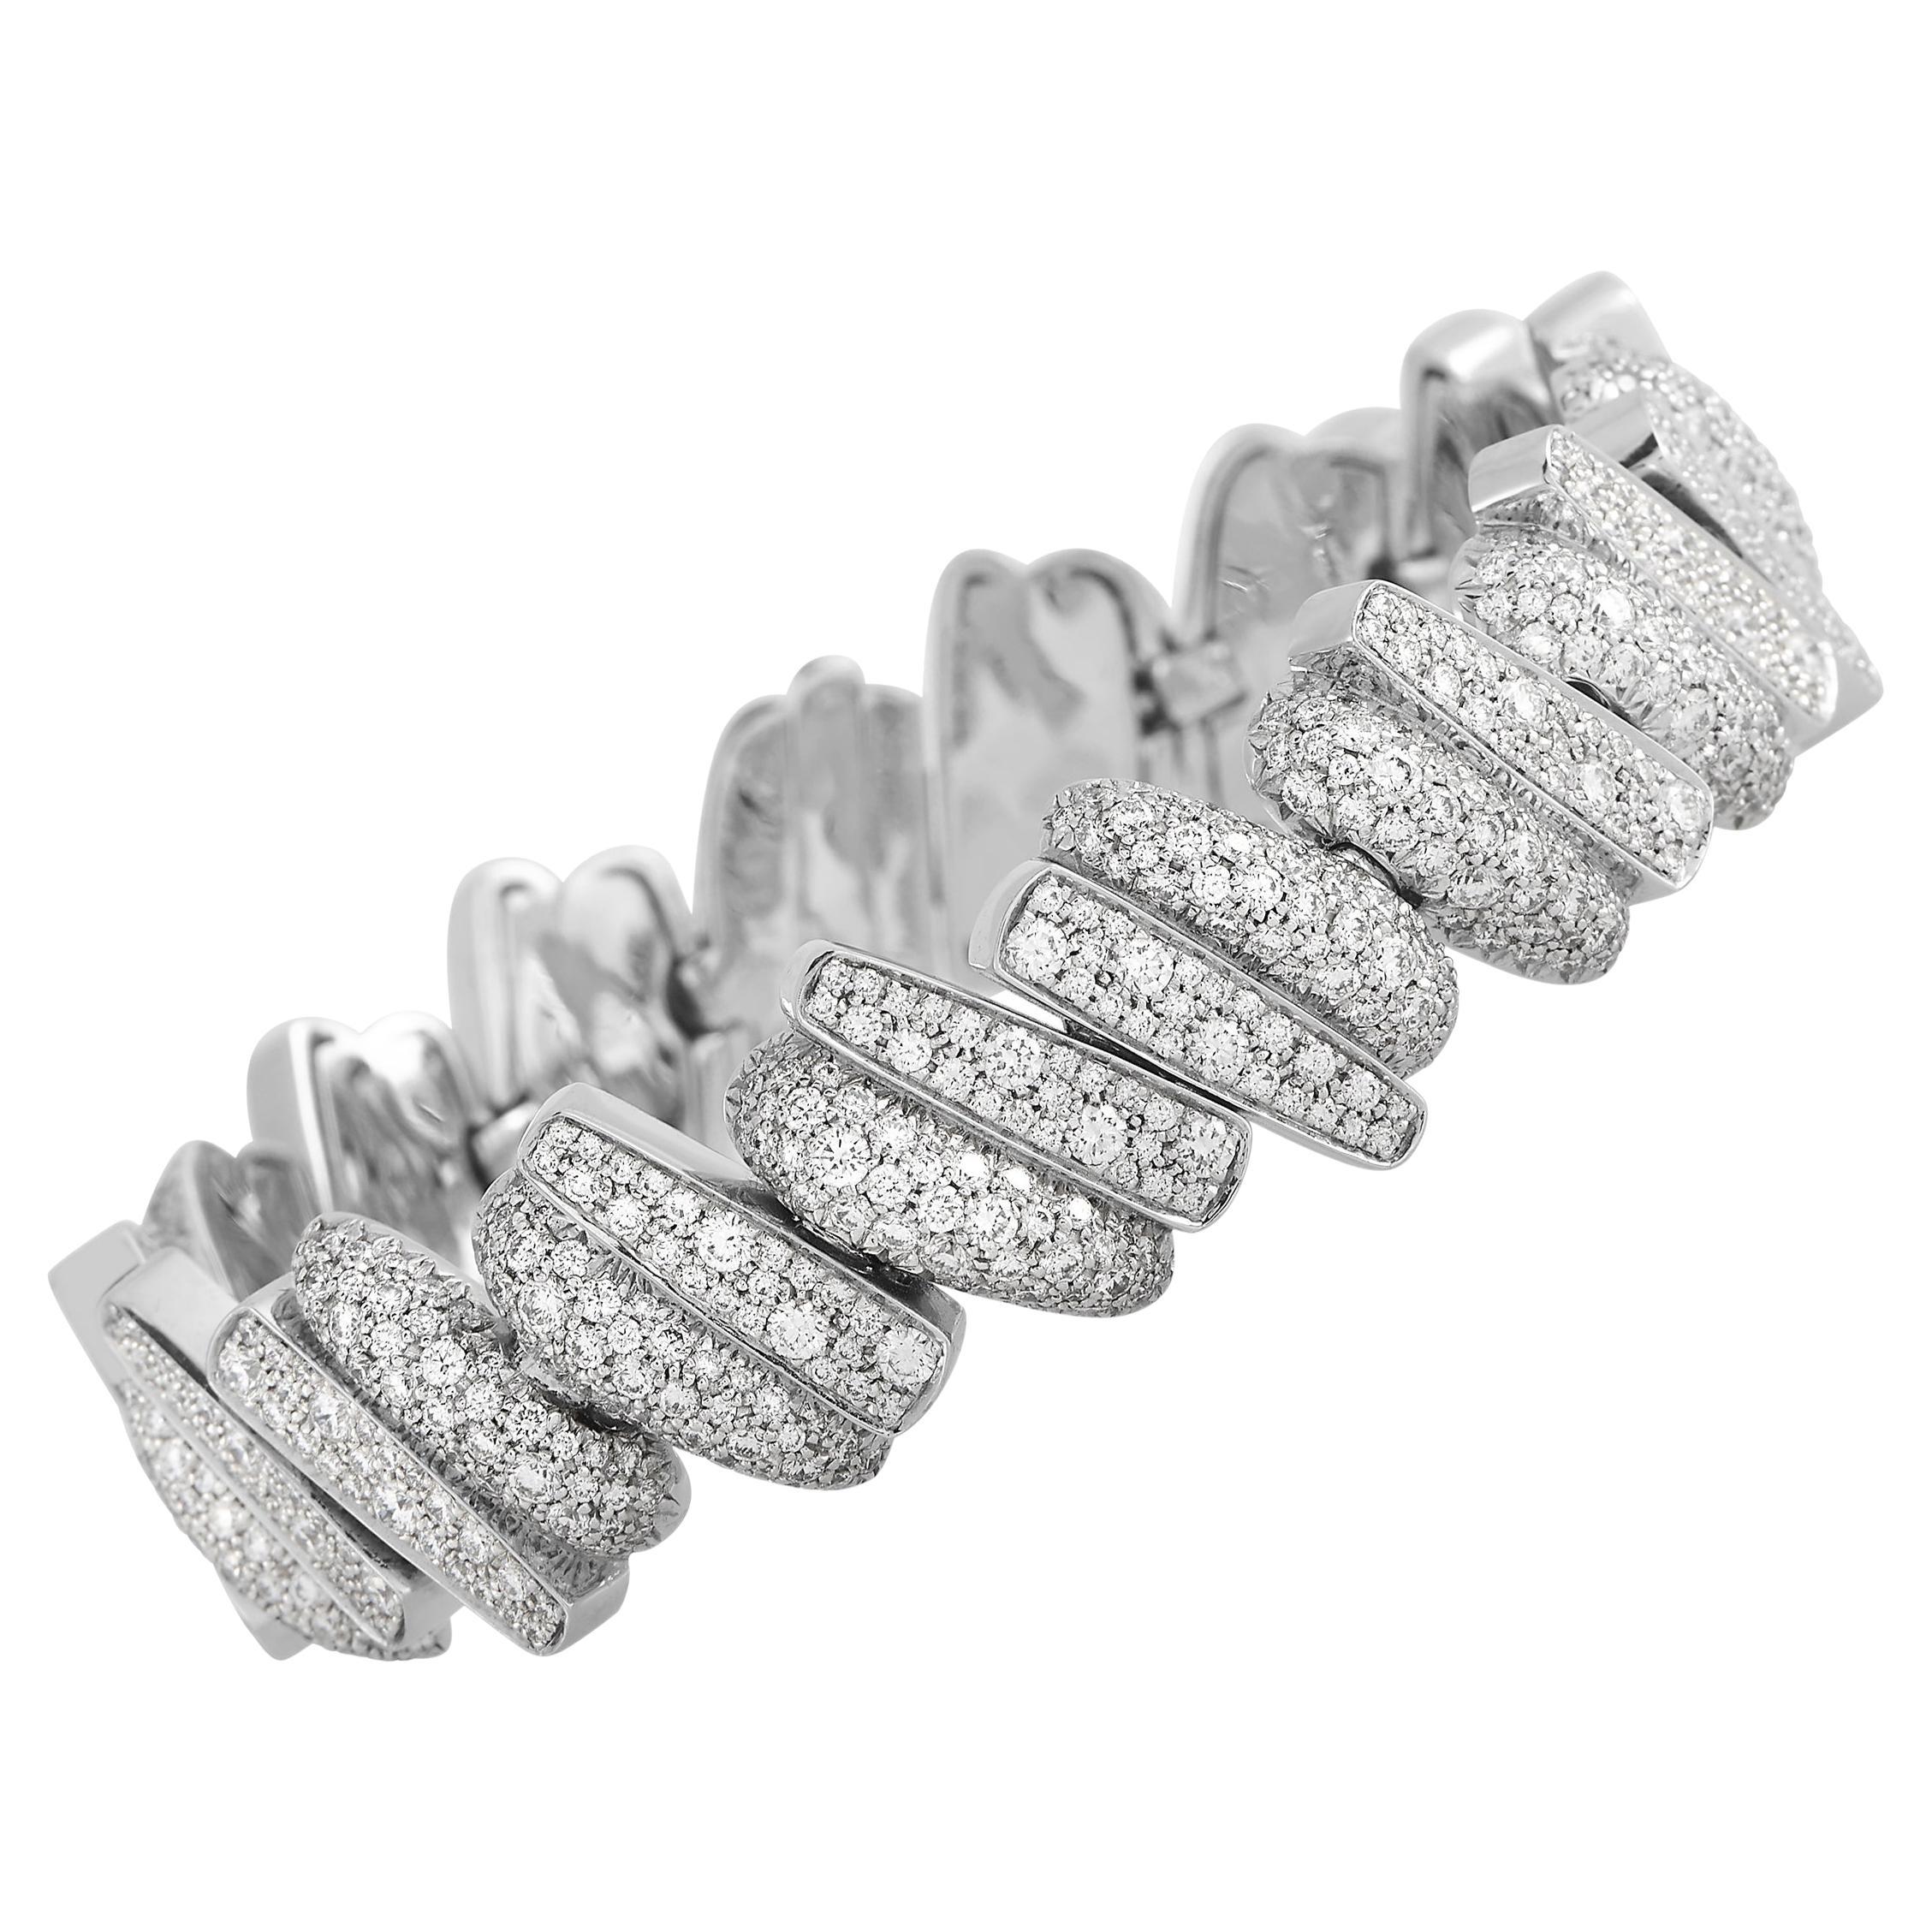 Fred of Paris Lovelight 18K White Gold 8.66 ct Diamond Bracelet